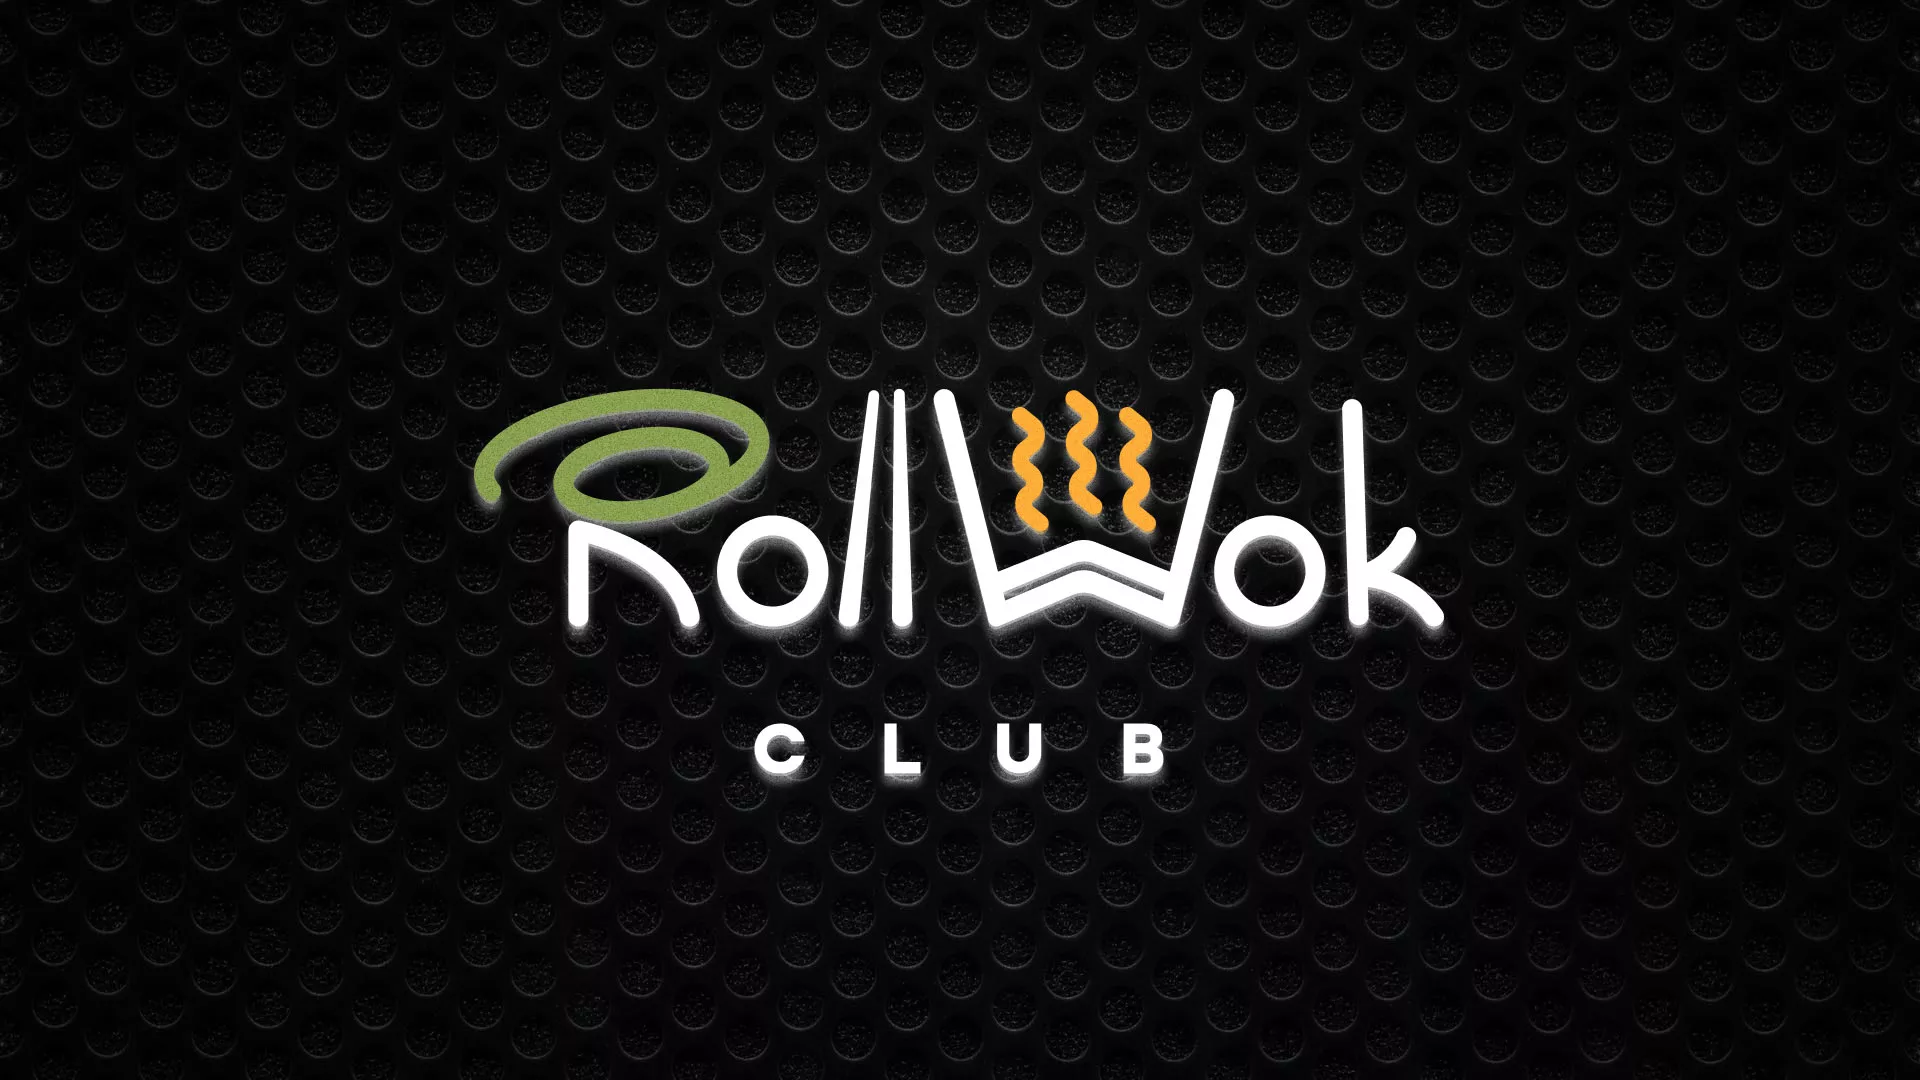 Брендирование торговых точек суши-бара «Roll Wok Club» в Алексине